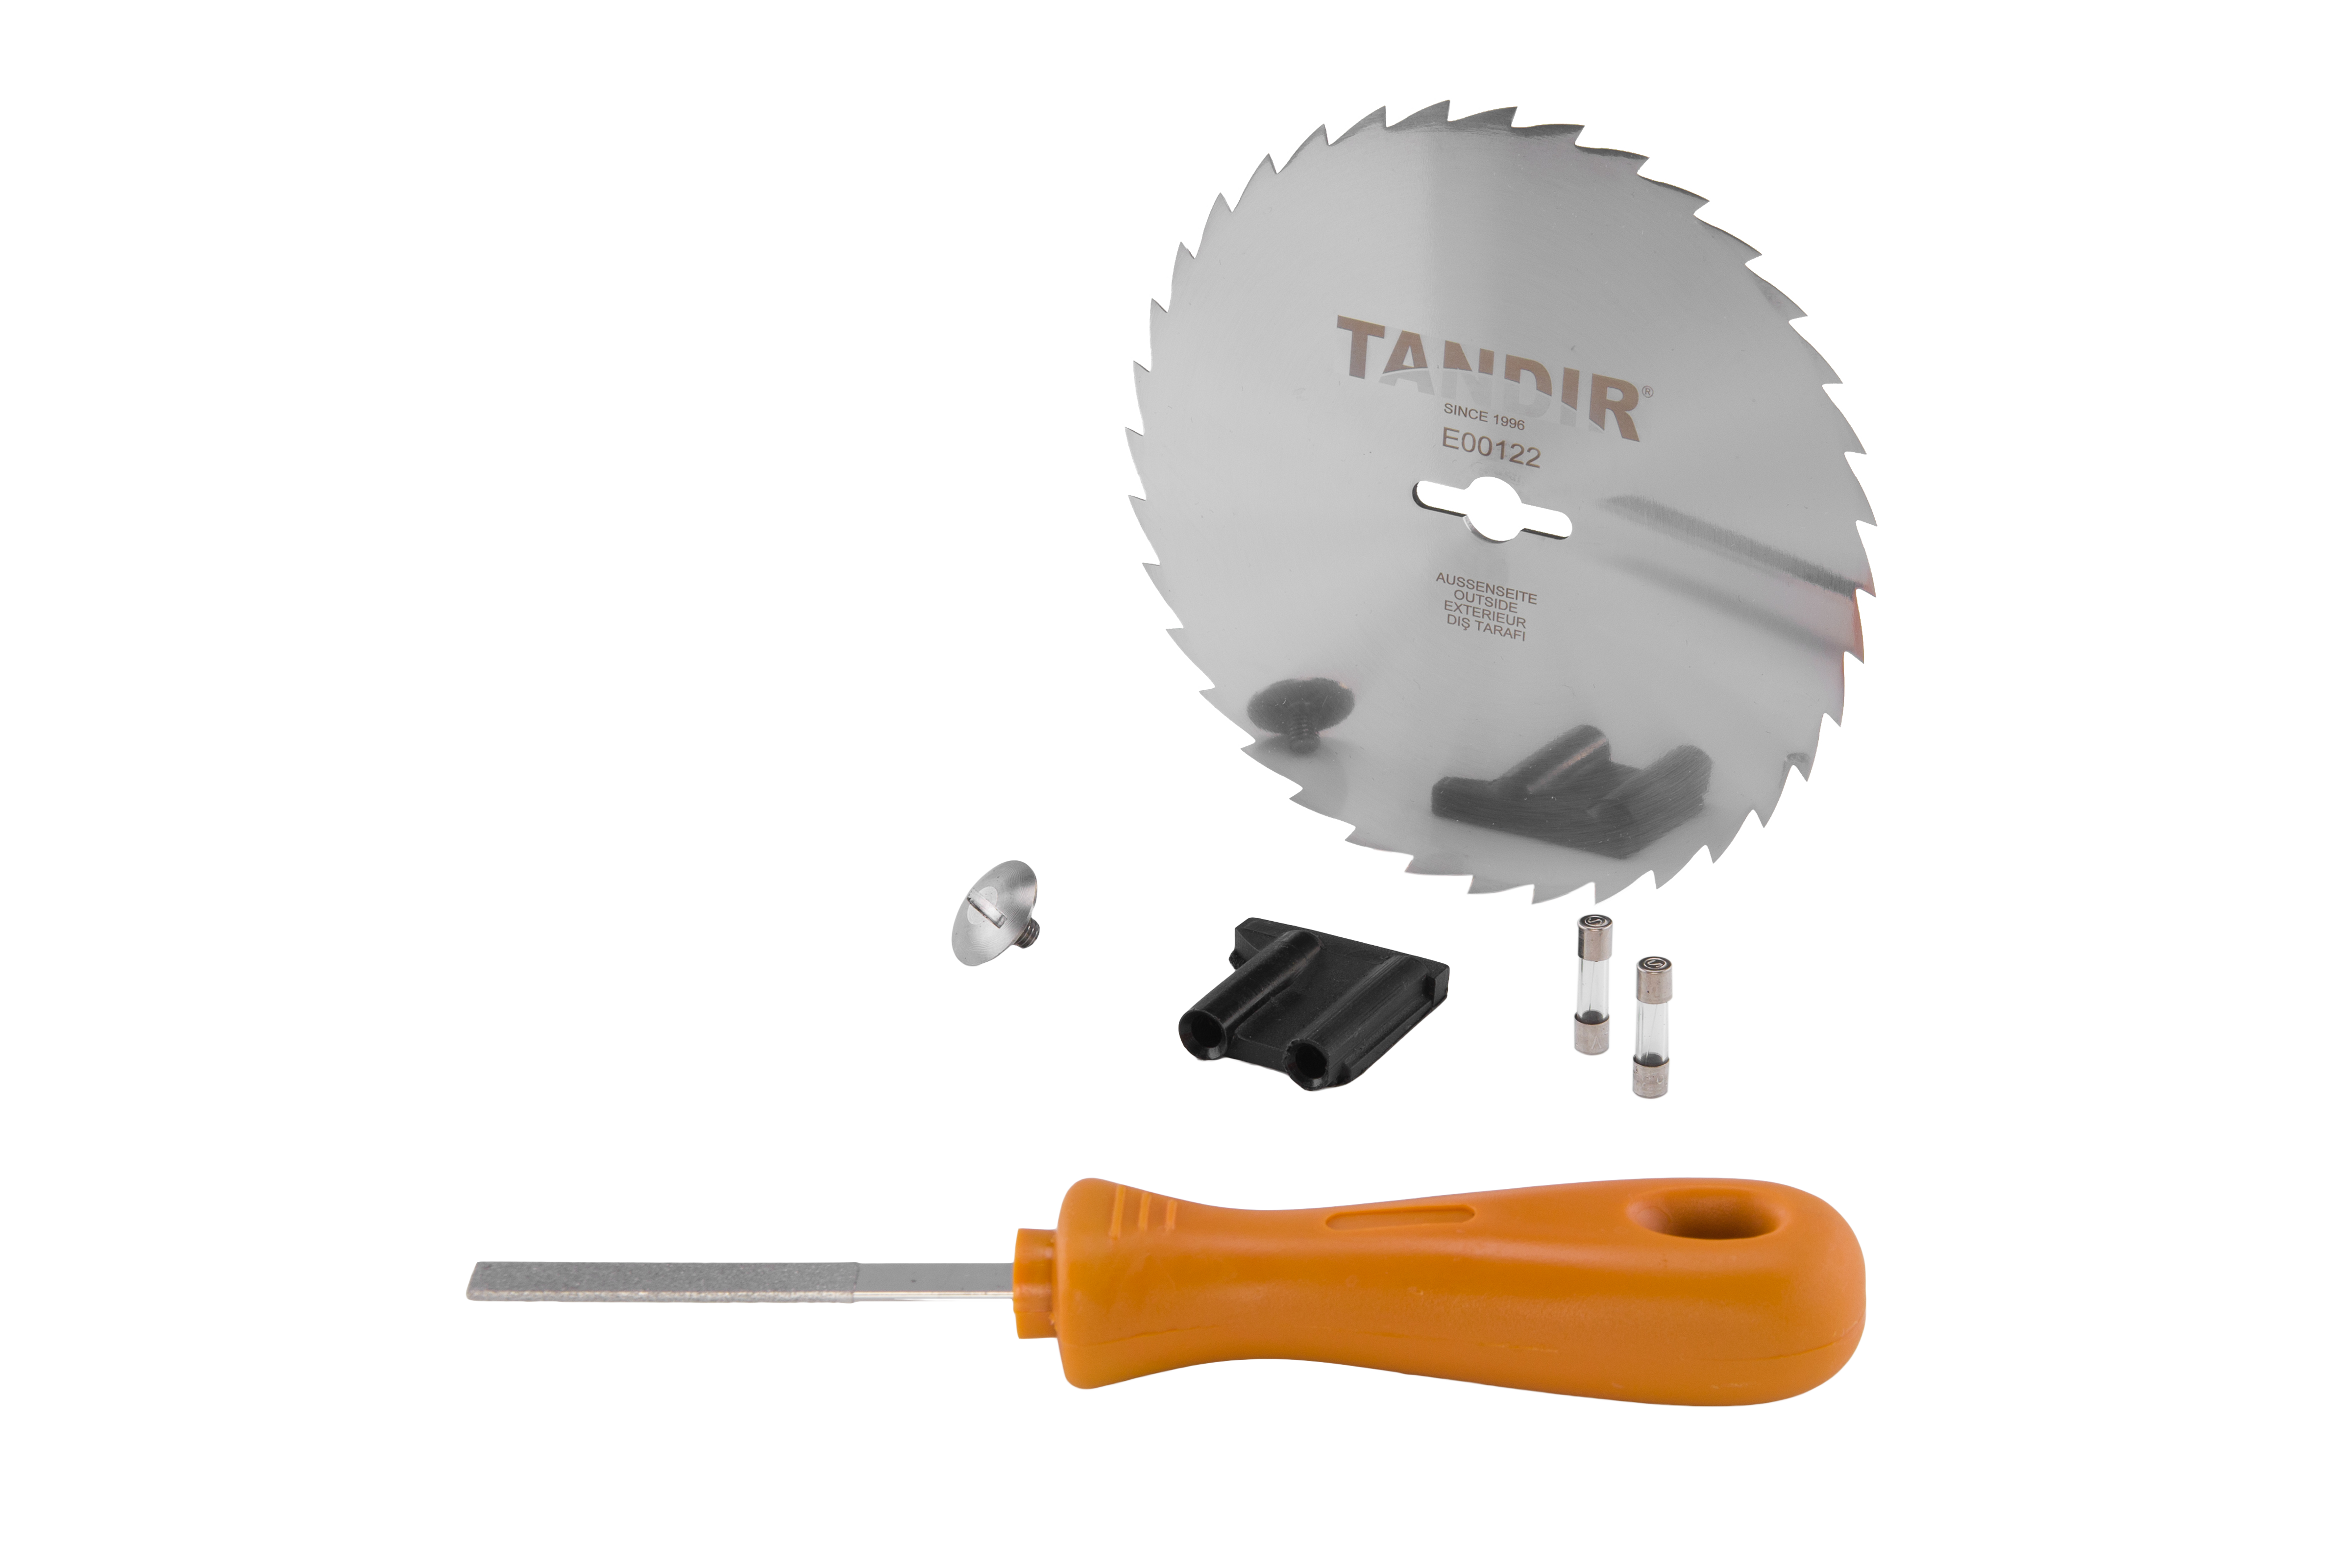 Tandir-Messer II 120 mit Kabel (Tischnetzteil)